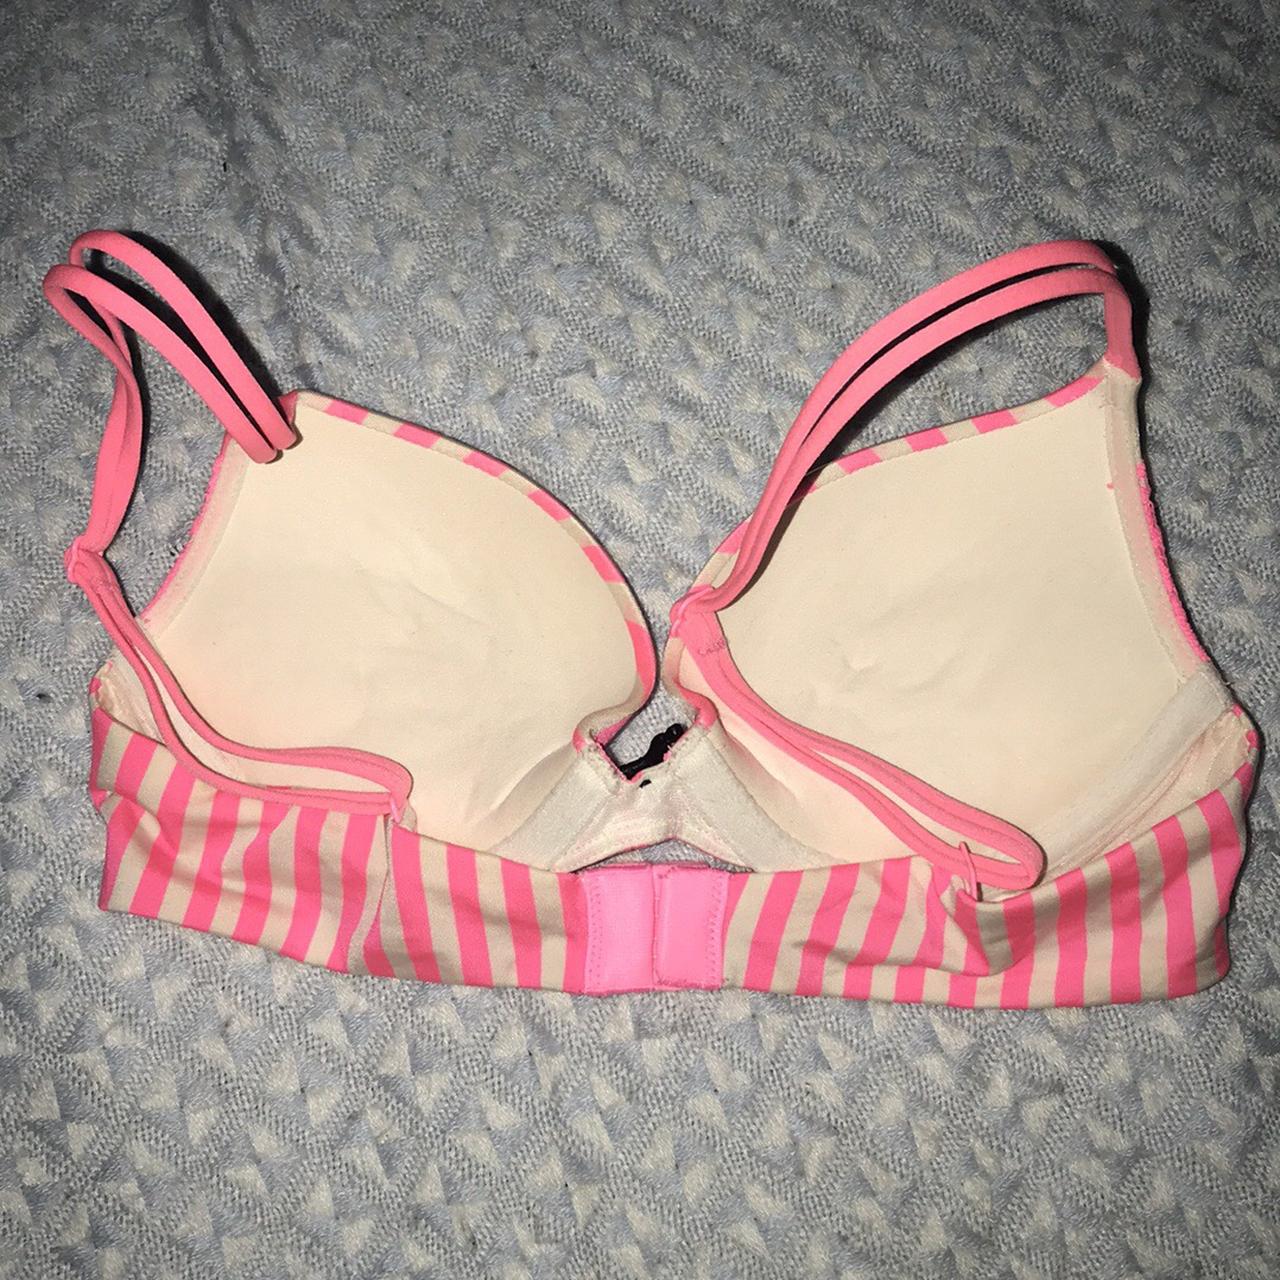 Victoria’s Secret candy cane striped push up bra., 32A